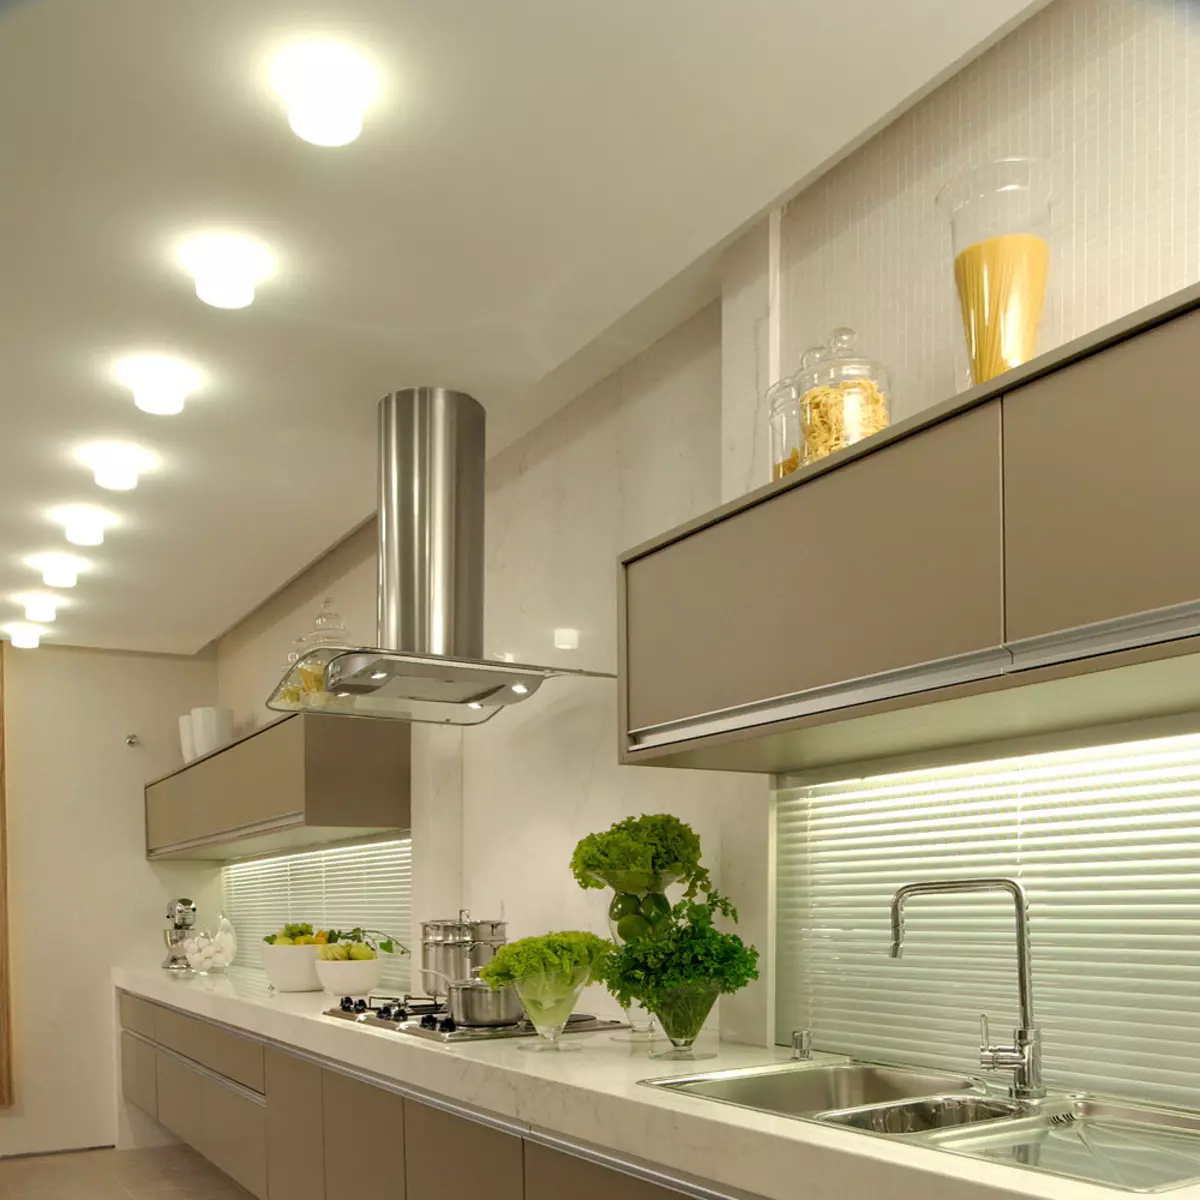 لامپ های آشپزخانه (74 عکس): آشپزخانه Sconce و لامپ های سنسور دیوار نصب شده، سربار و چراغ های پیگیری و سقف، گزینه های دیگر 21003_21